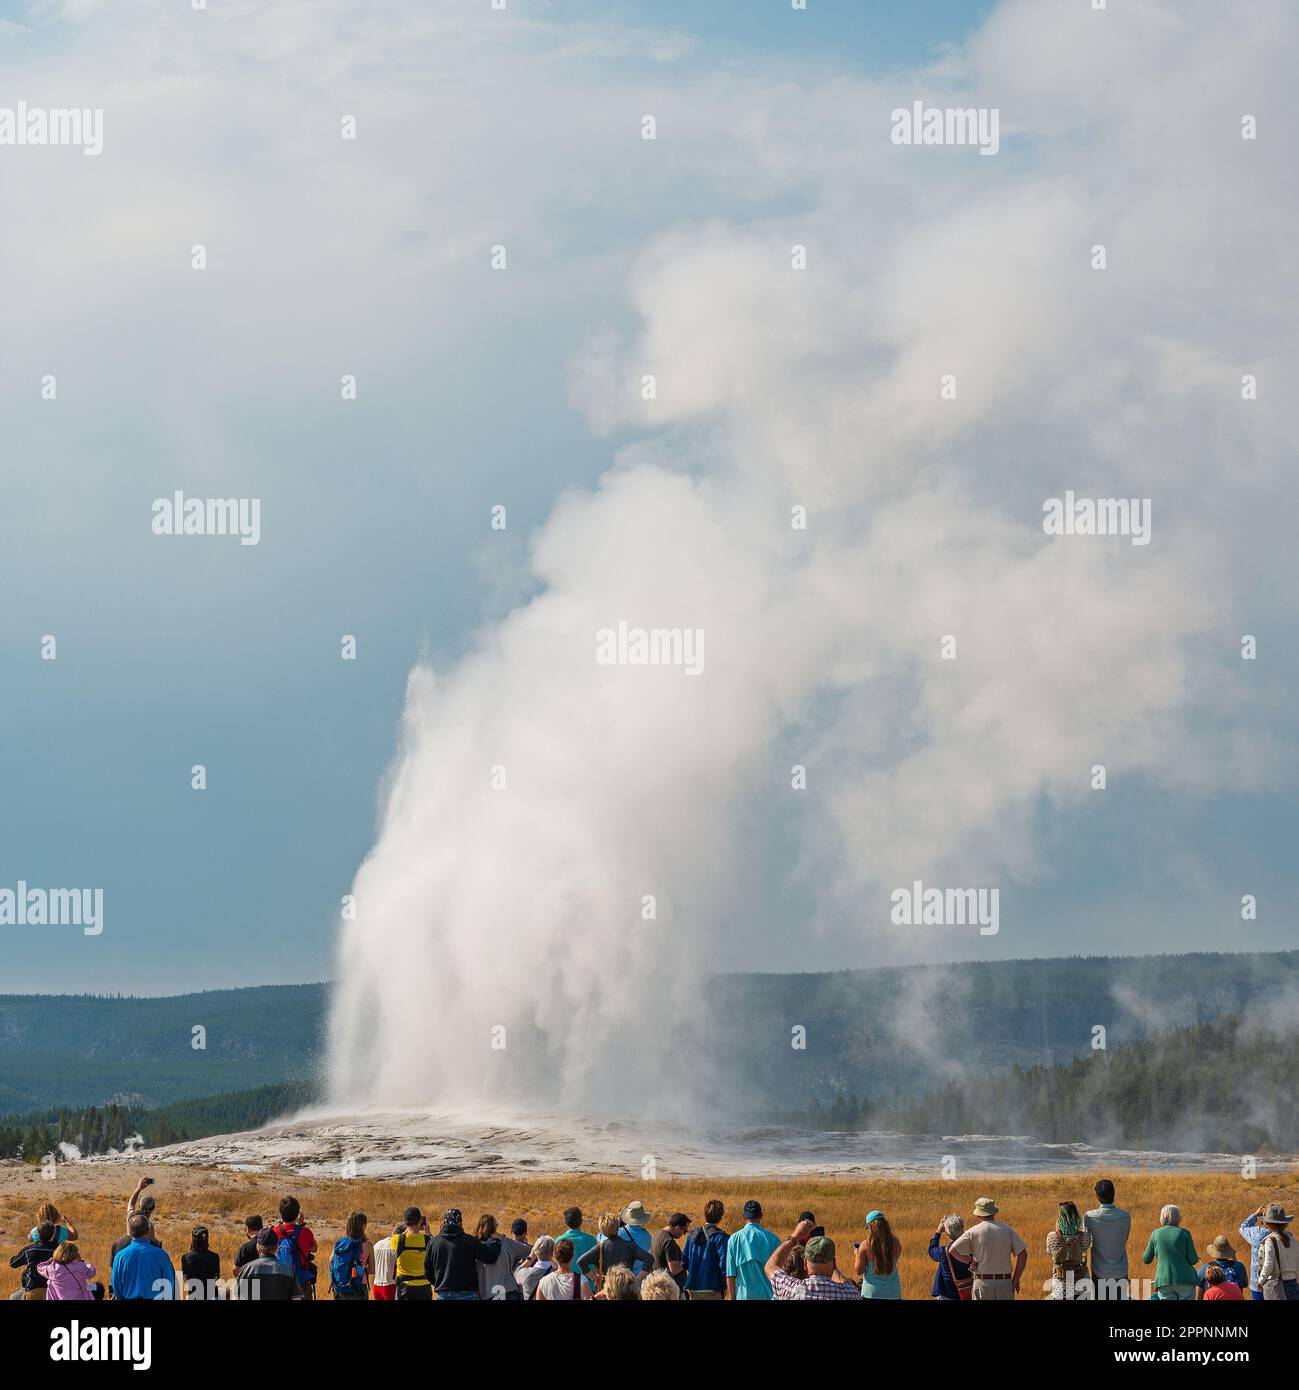 Touristes méconnaissables regardant l'éruption de la source chaude du geyser Old Faithful, parc national de Yellowstone, Wyoming, États-Unis. Banque D'Images